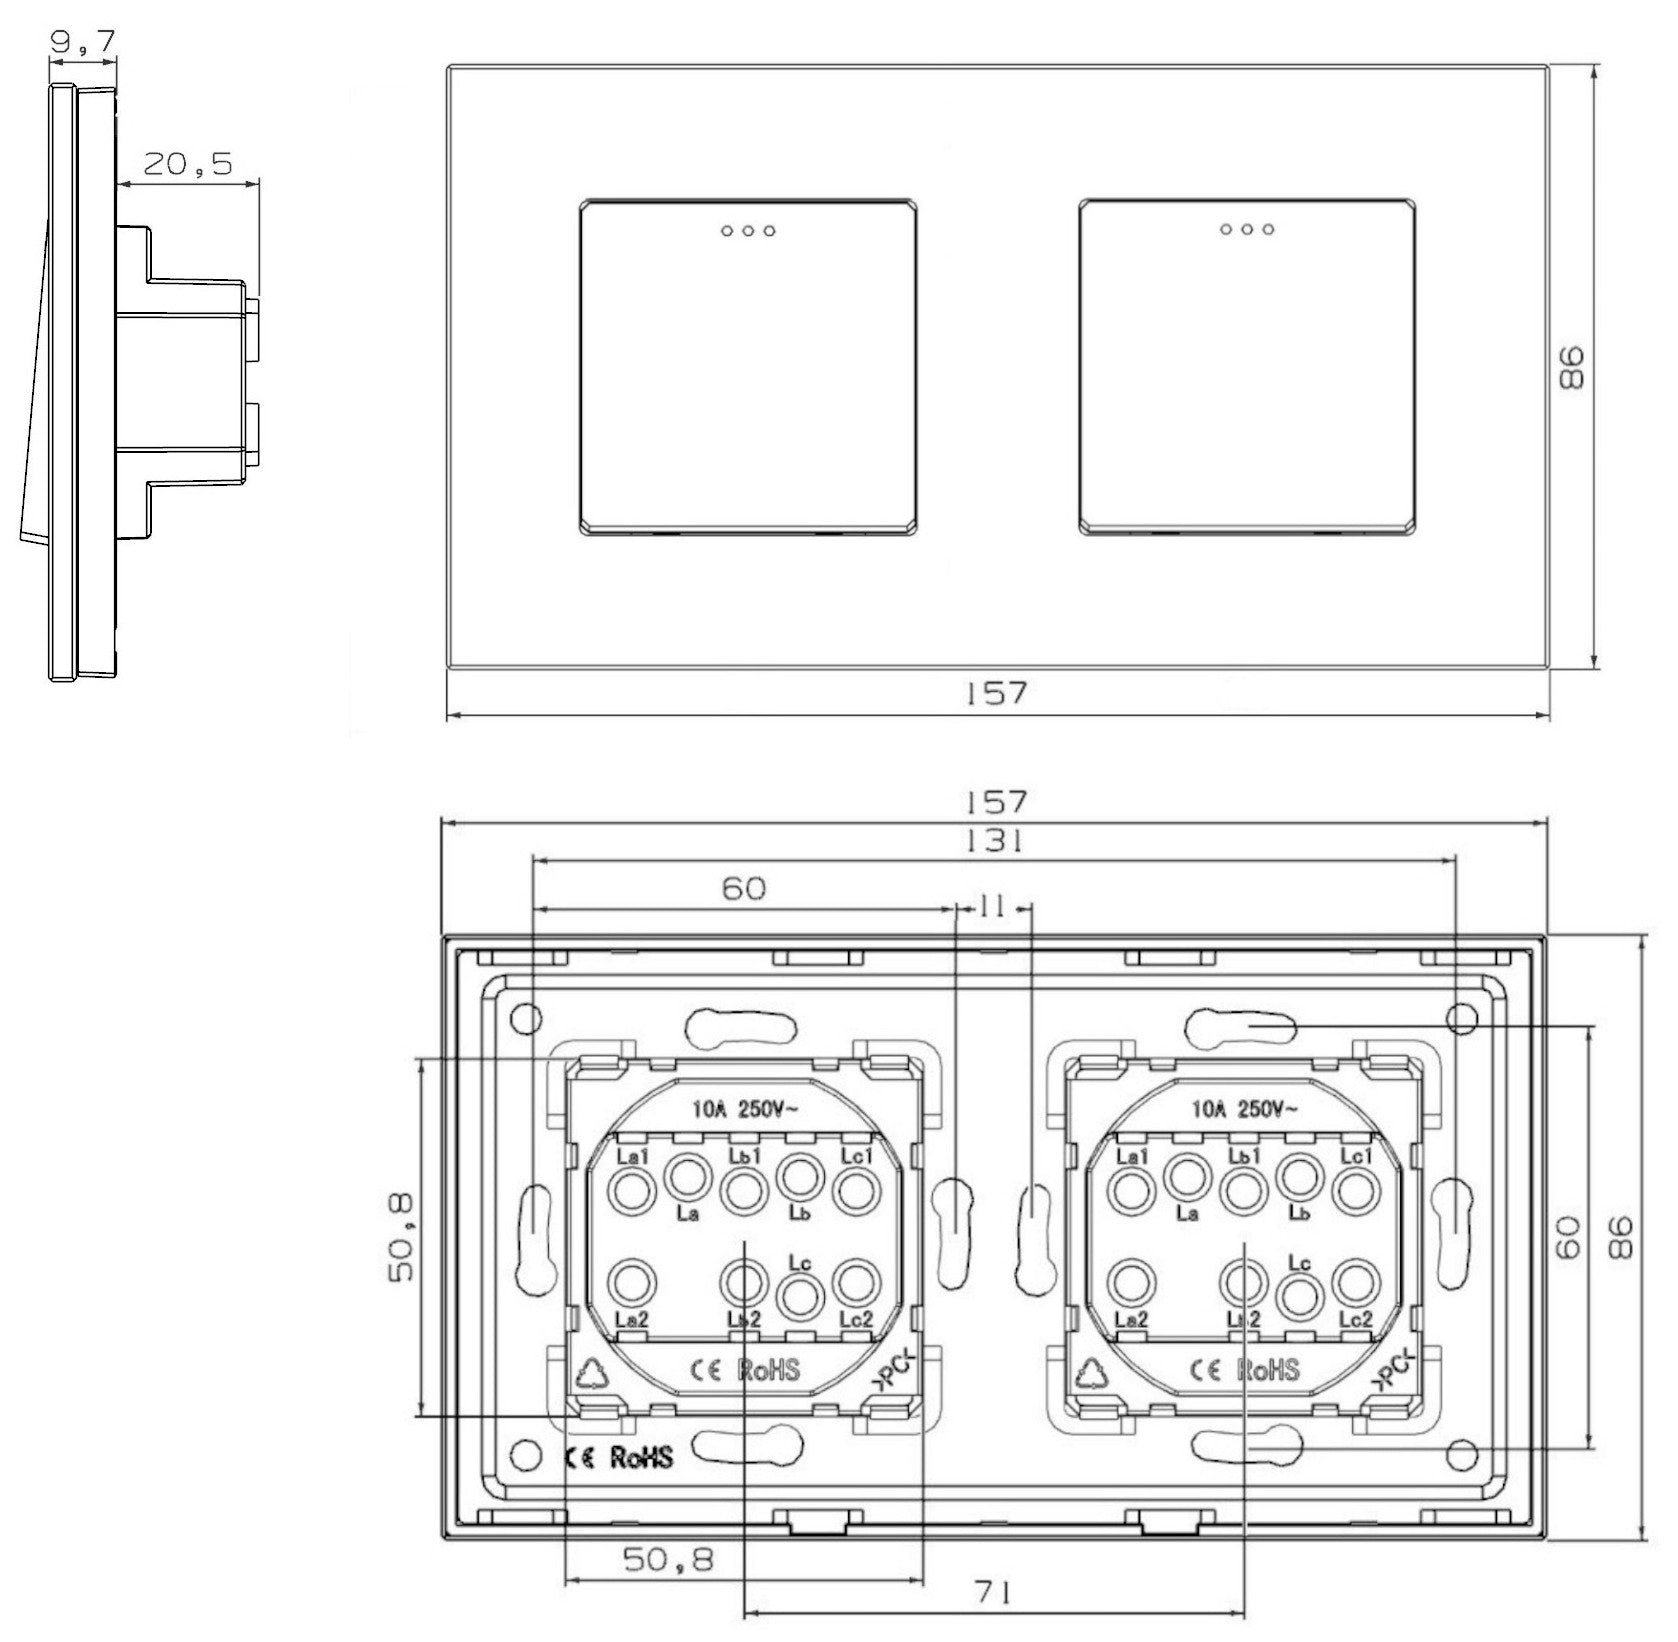 Interruptor mecánico de dos grupos, dos cuadros (blanco, vidrio)